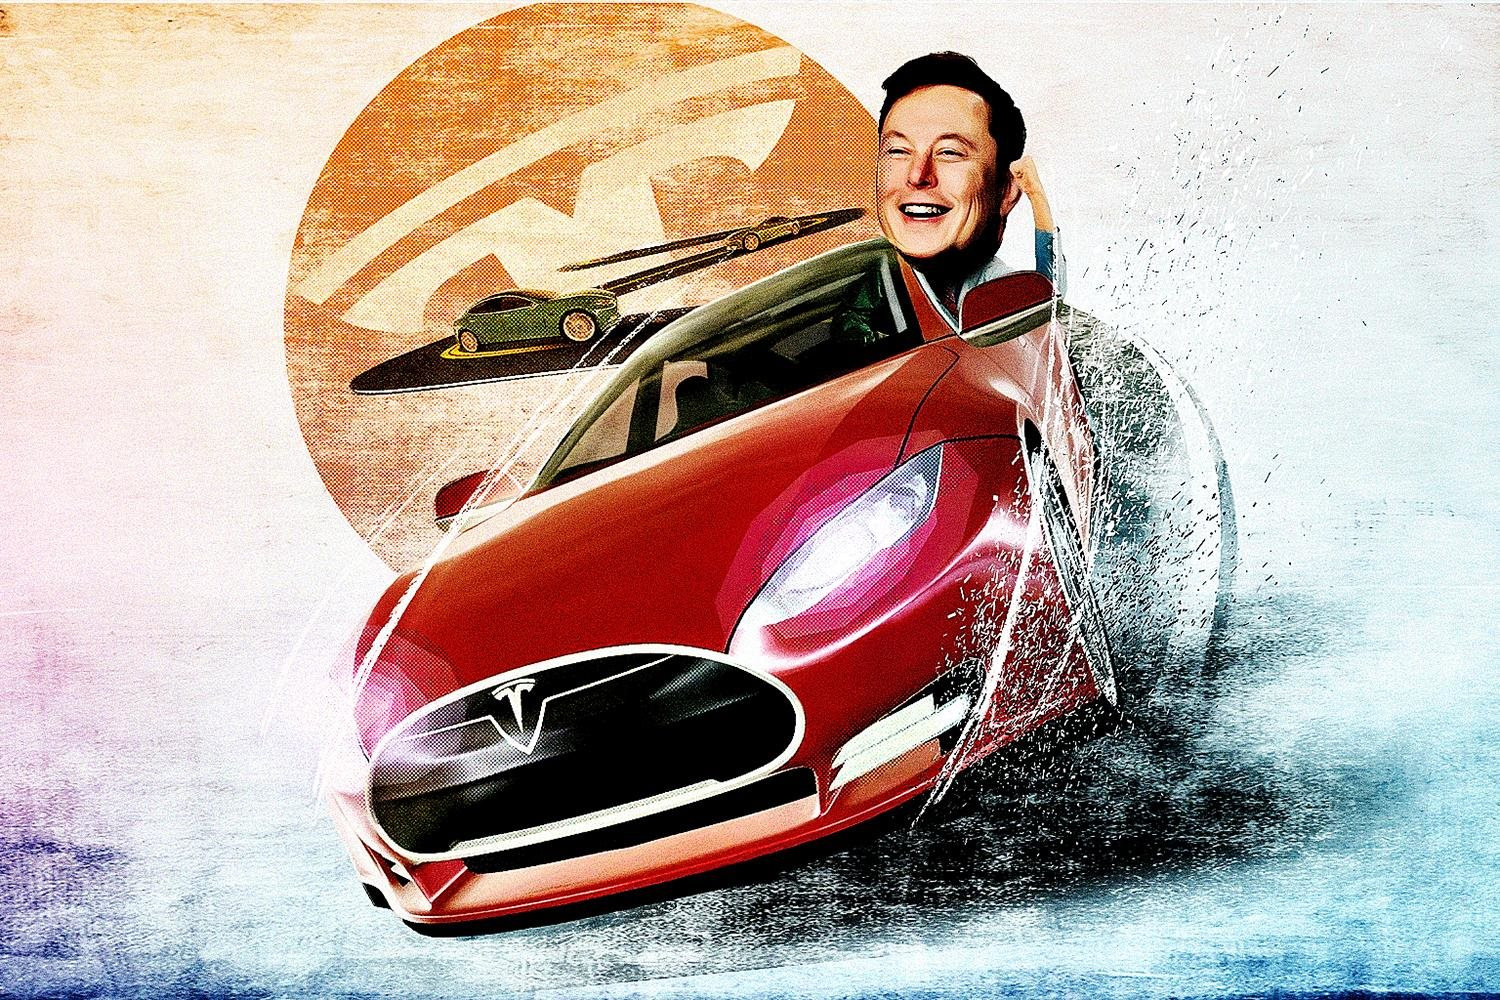 3 lớp tiểu xảo trong canh bạc thế kỷ 21 của Elon Musk: Chiến lược giữ dòng xe đắt đỏ nhất dù chúng chỉ chiếm 5% doanh số, chờ đợi đối thủ sập bẫy - Ảnh 1.